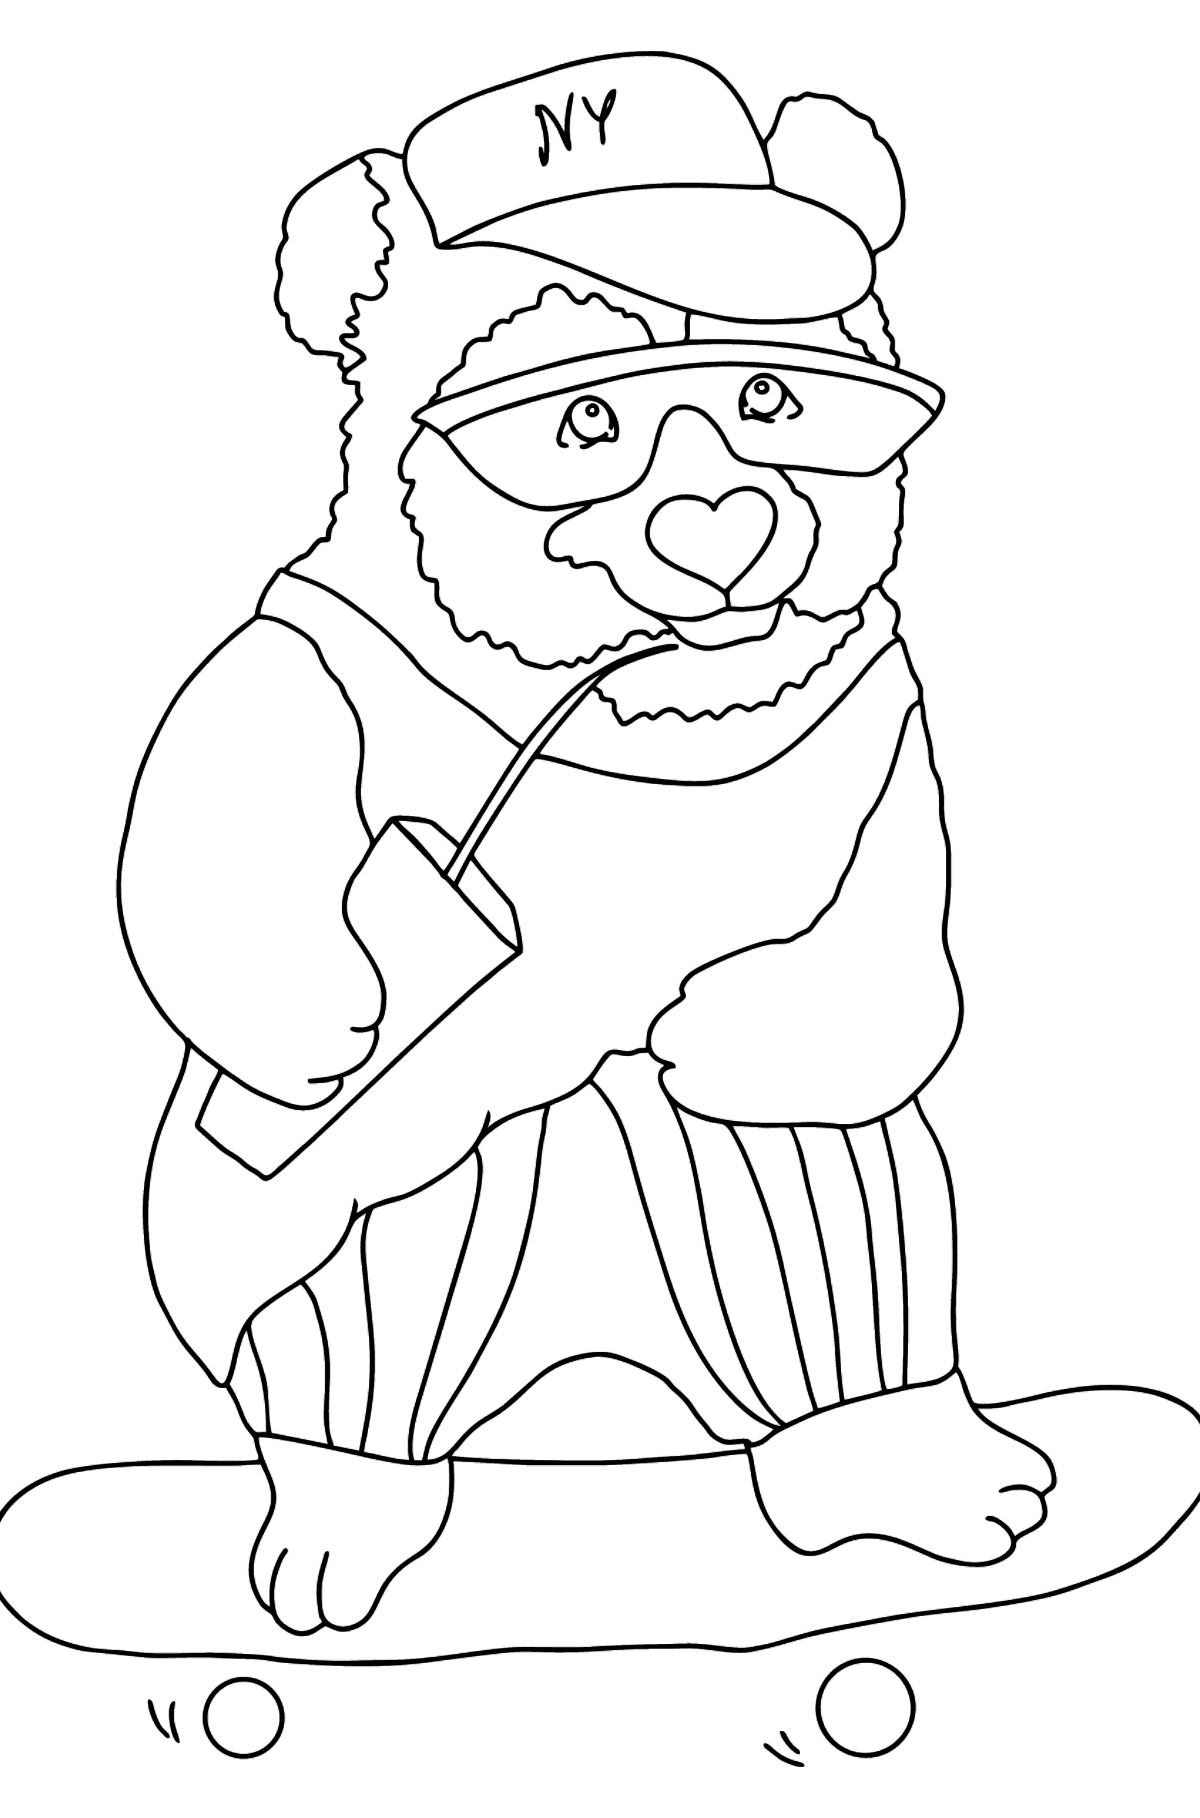 Panda immagine da colorare - Disegni da colorare per bambini